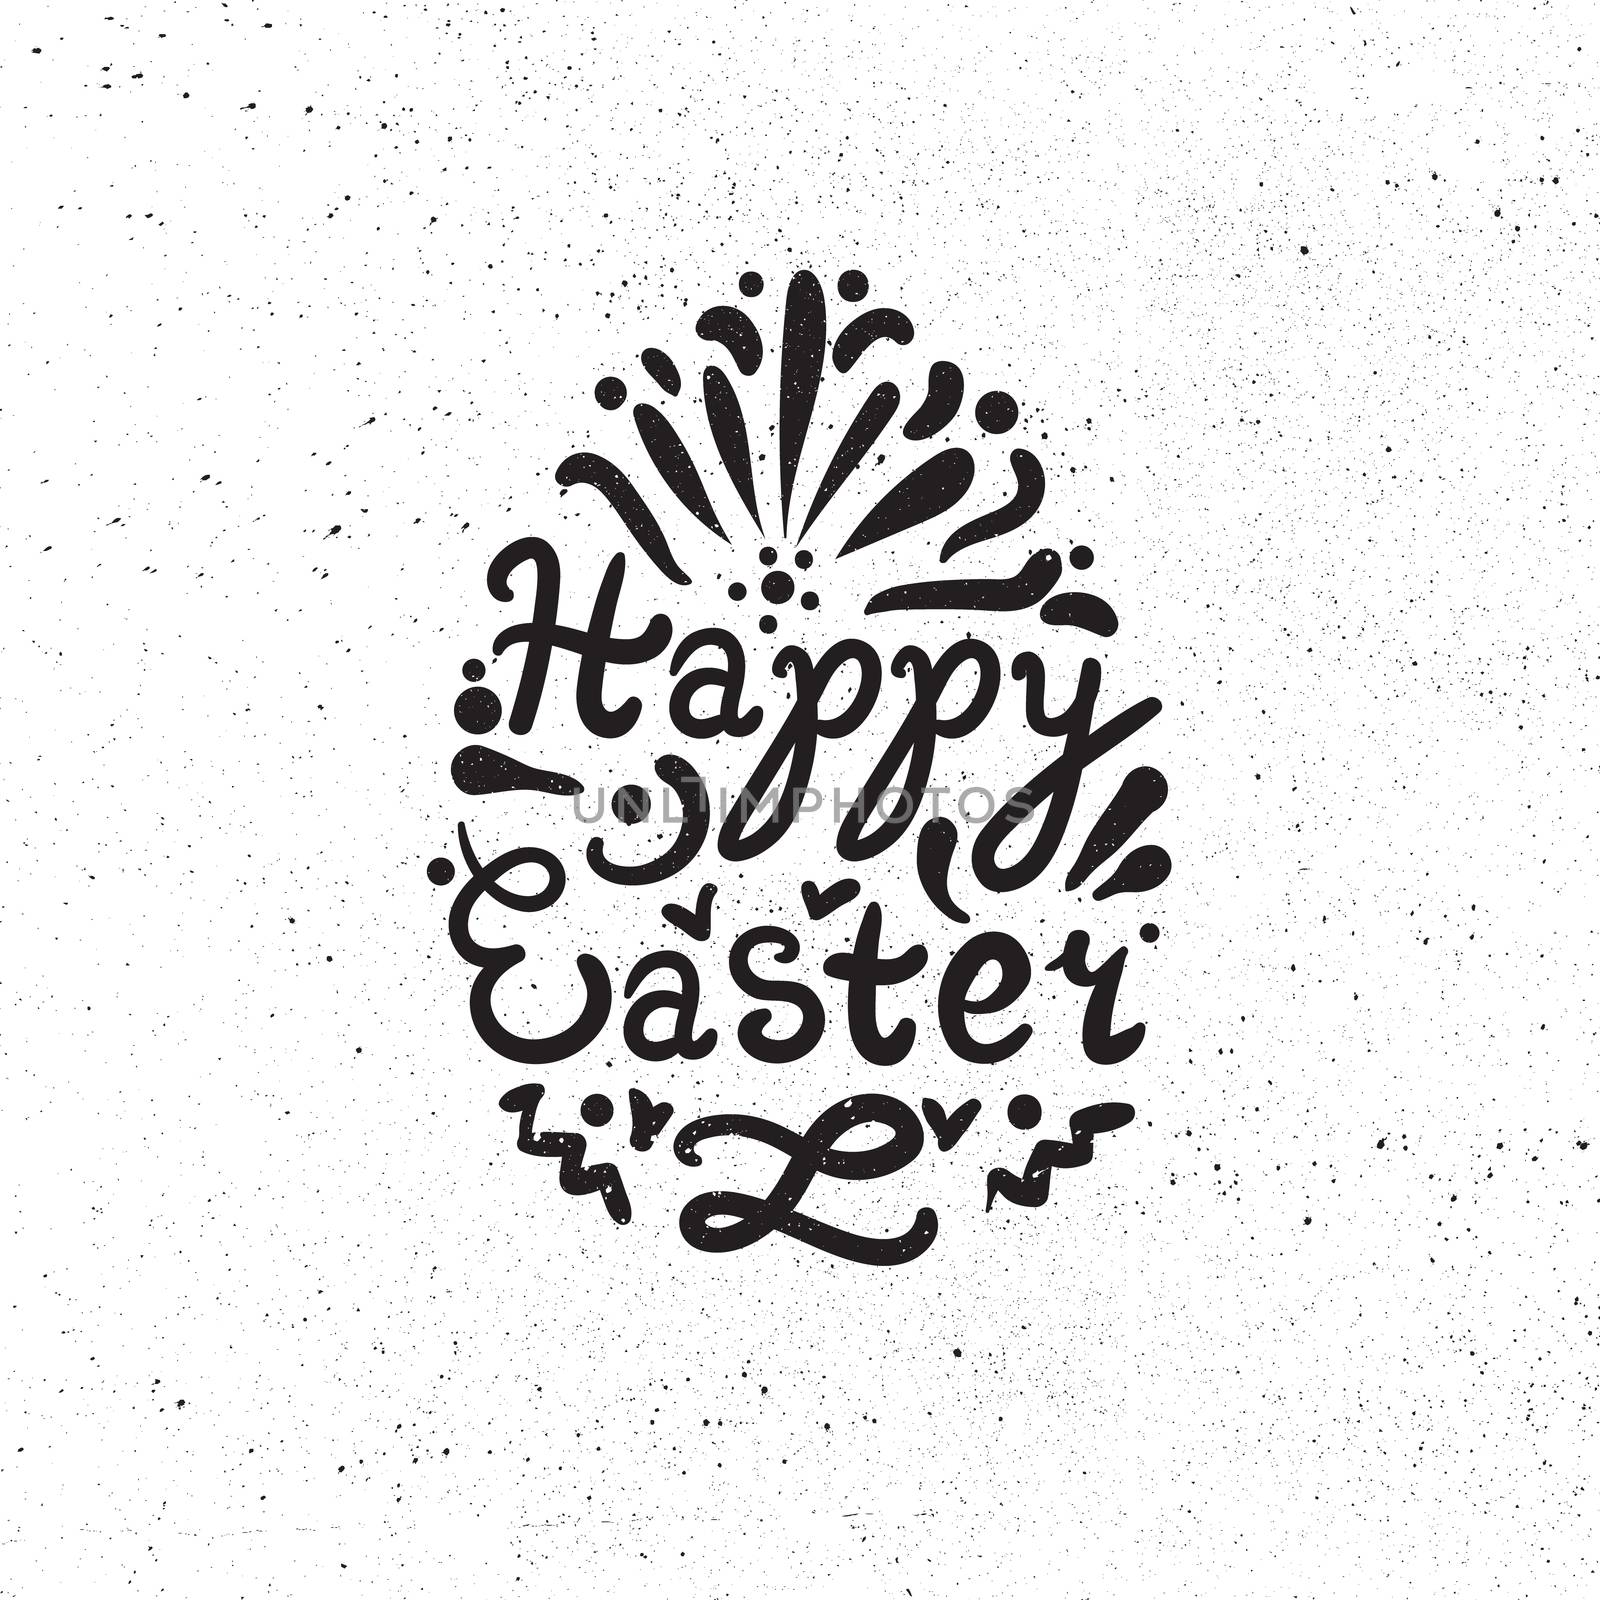 Vintage Happy Easter lettering by barsrsind